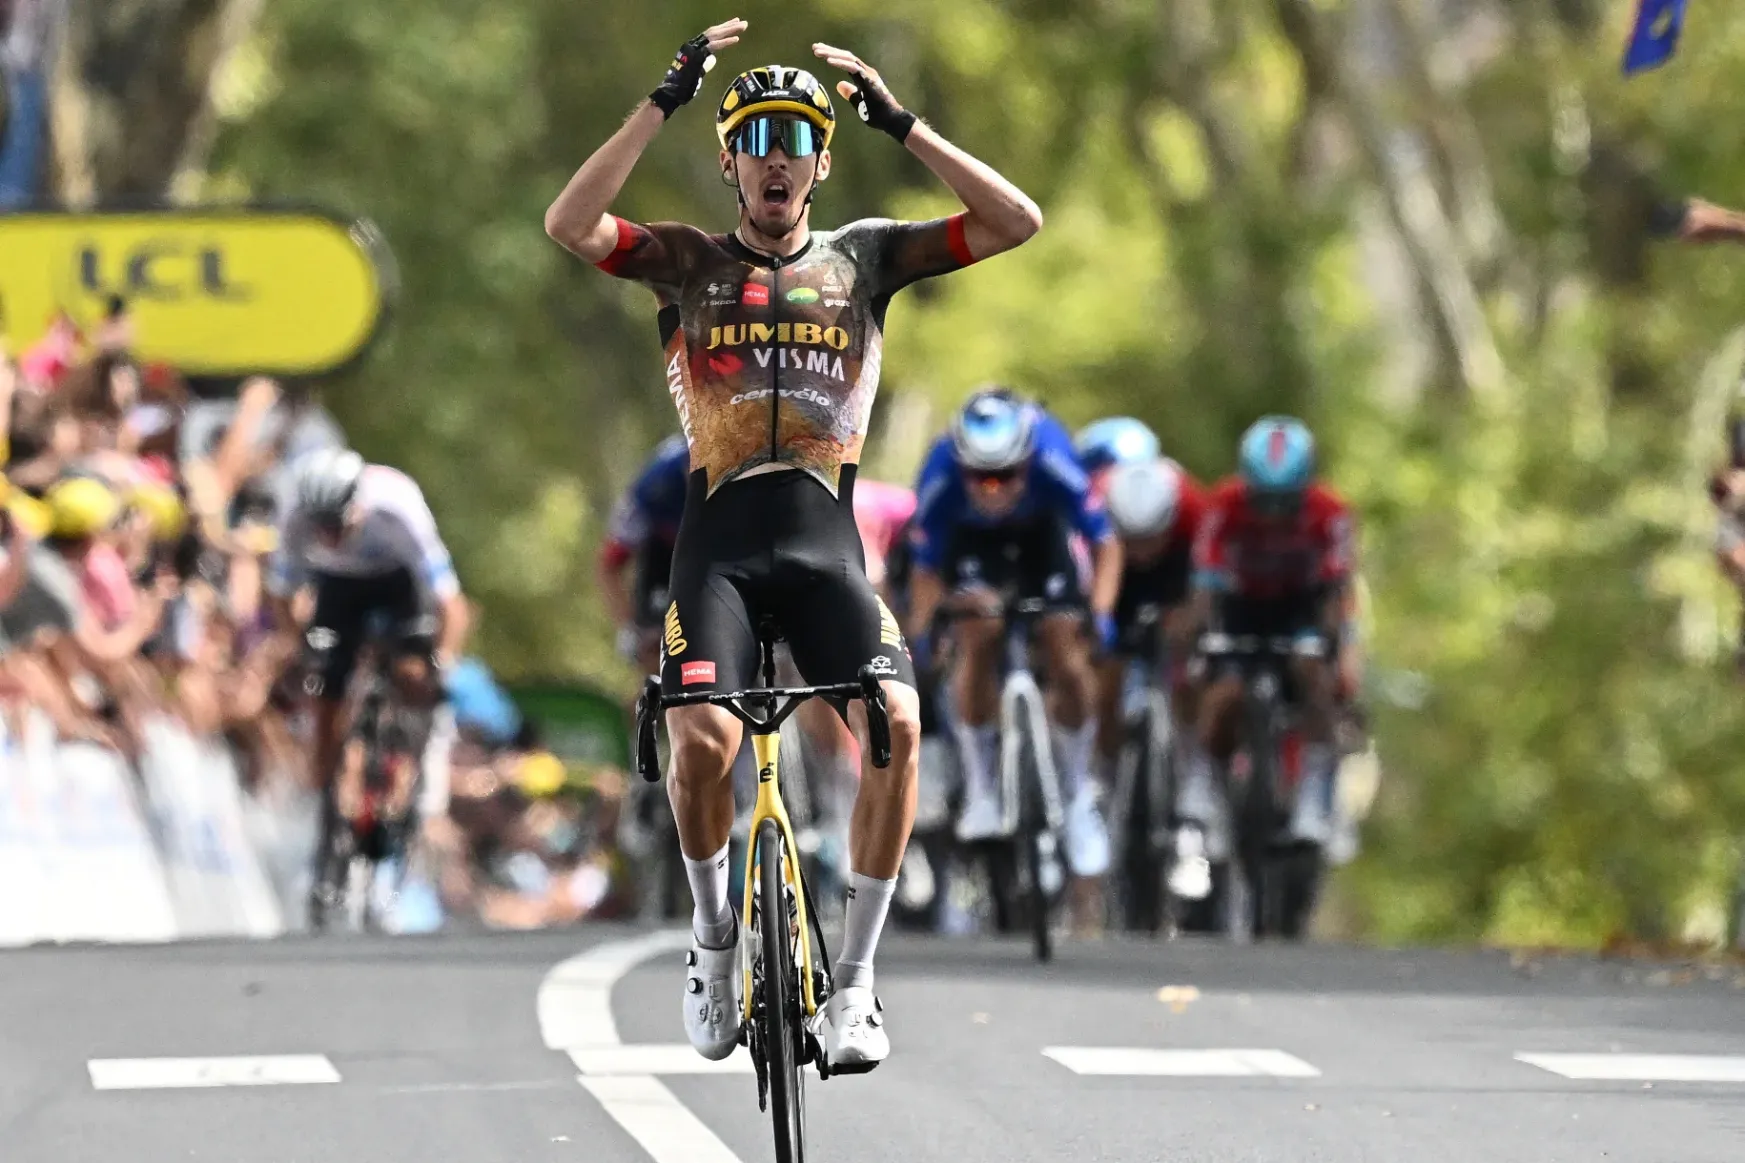 A sárga trikós csapattársa nyert, megvan az első francia győzelem az idei Tour de France-on